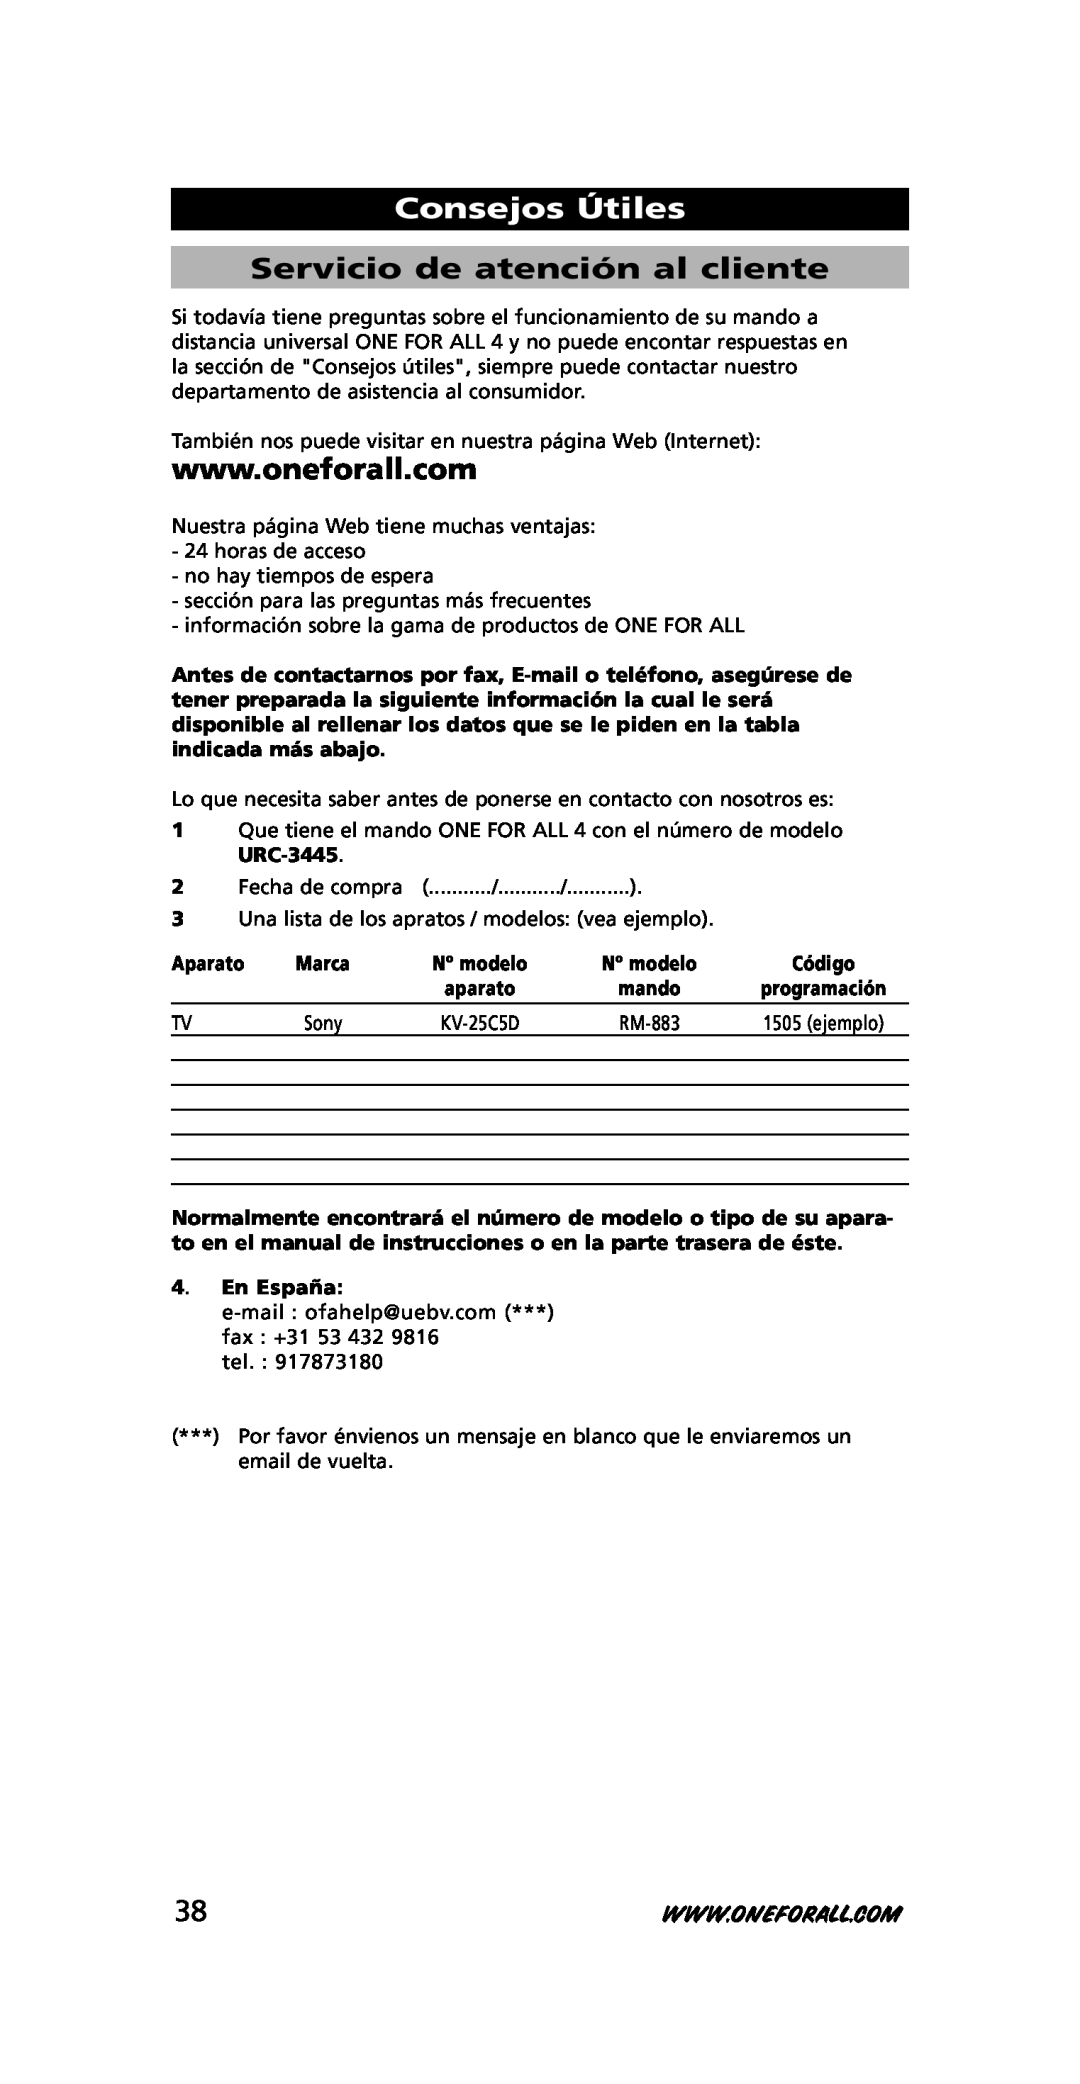 One for All URC-3445 instruction manual Consejos Útiles, Servicio de atención al cliente, Aparato, En España 